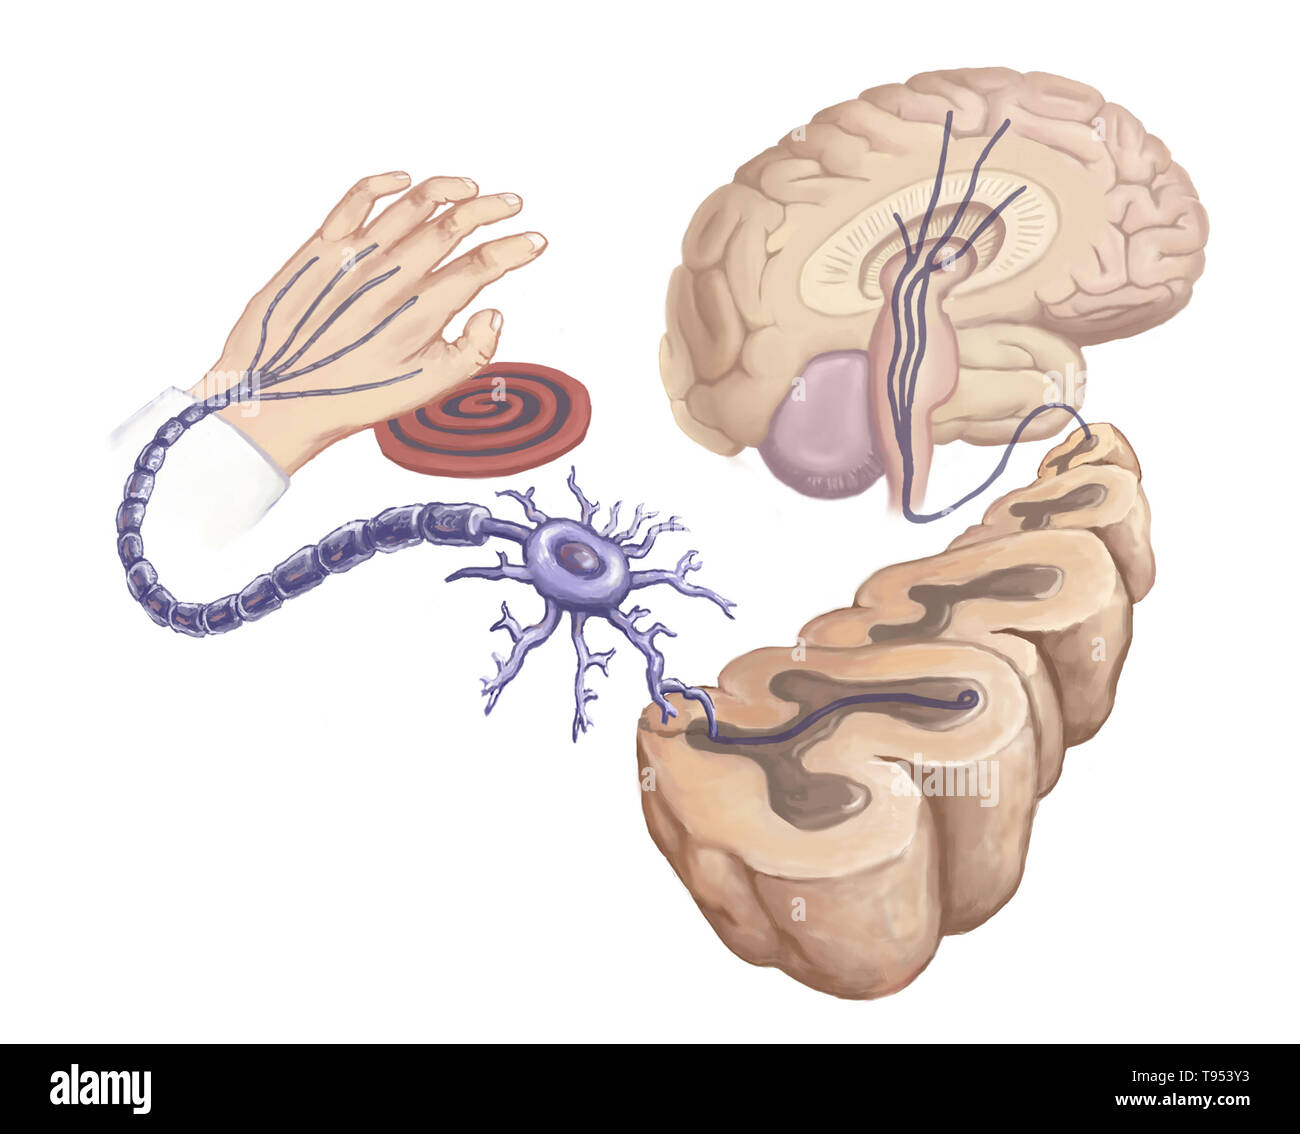 Abbildung einer Hand berühren eines heißen Herd Element und Reaktion in neuronale Schaltkreise des Körpers. Stockfoto